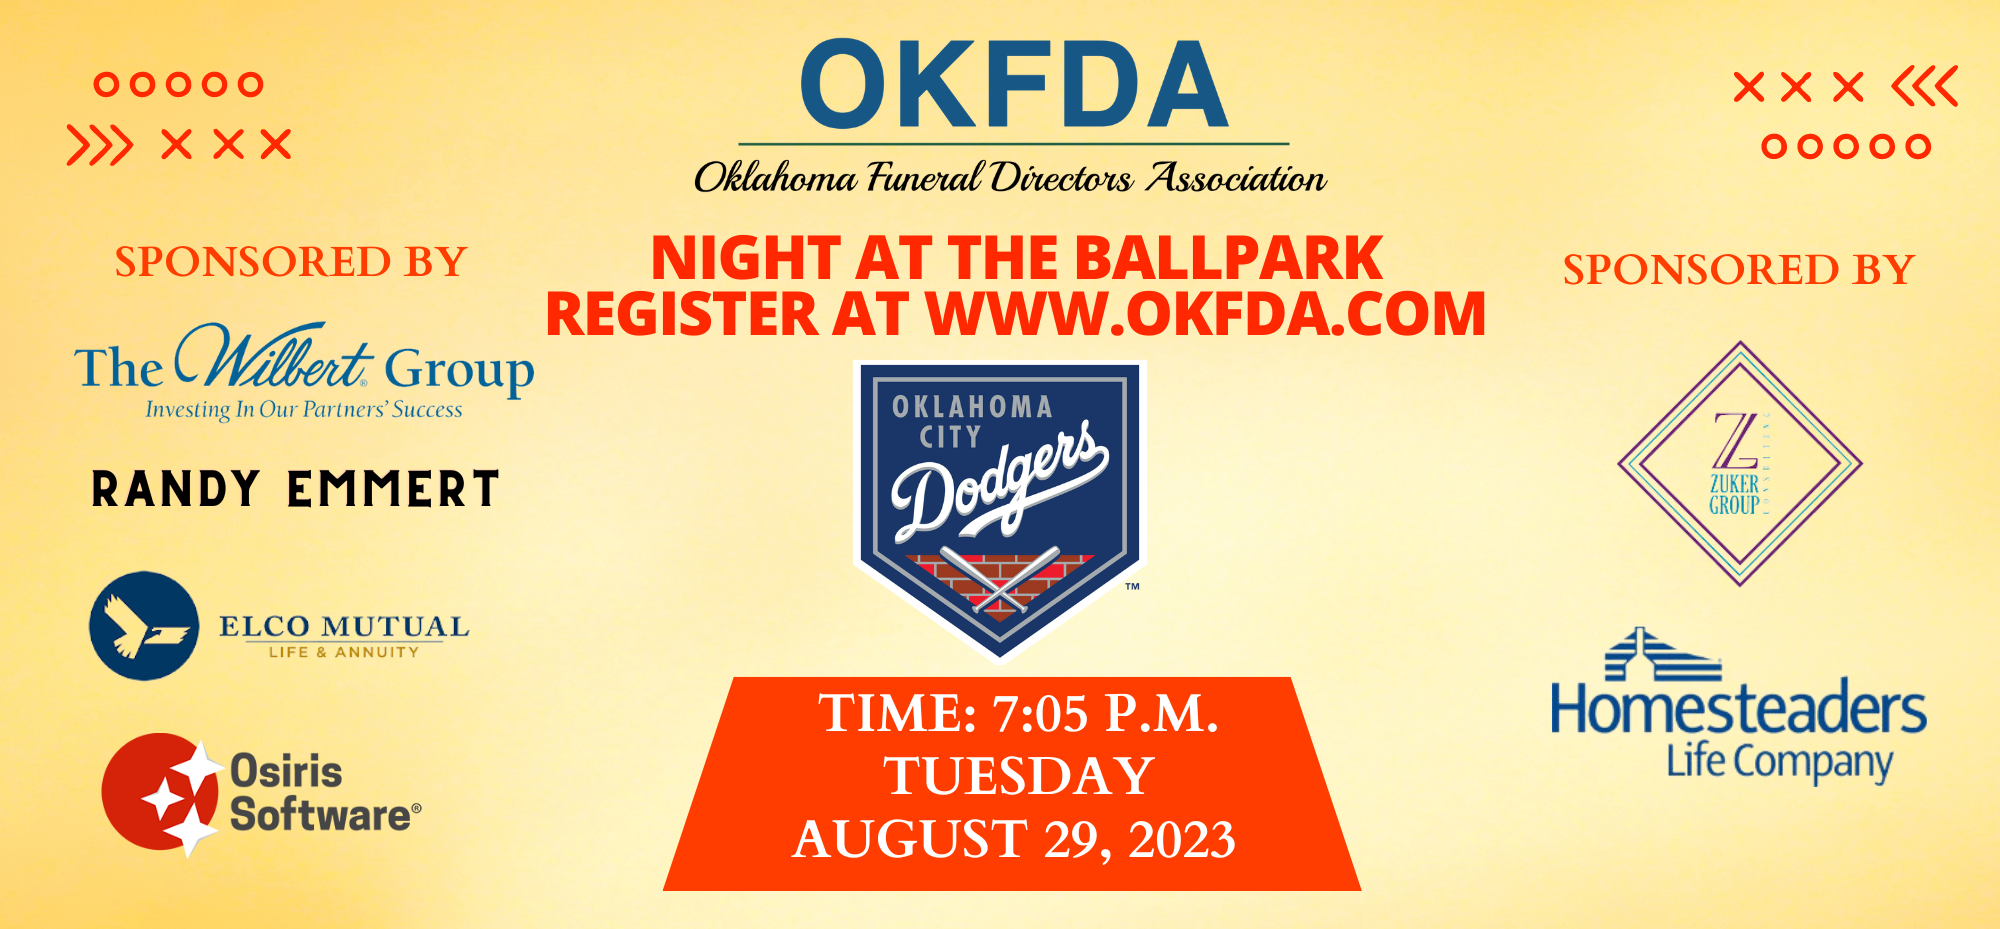 OKFDA Night at the Ballpark